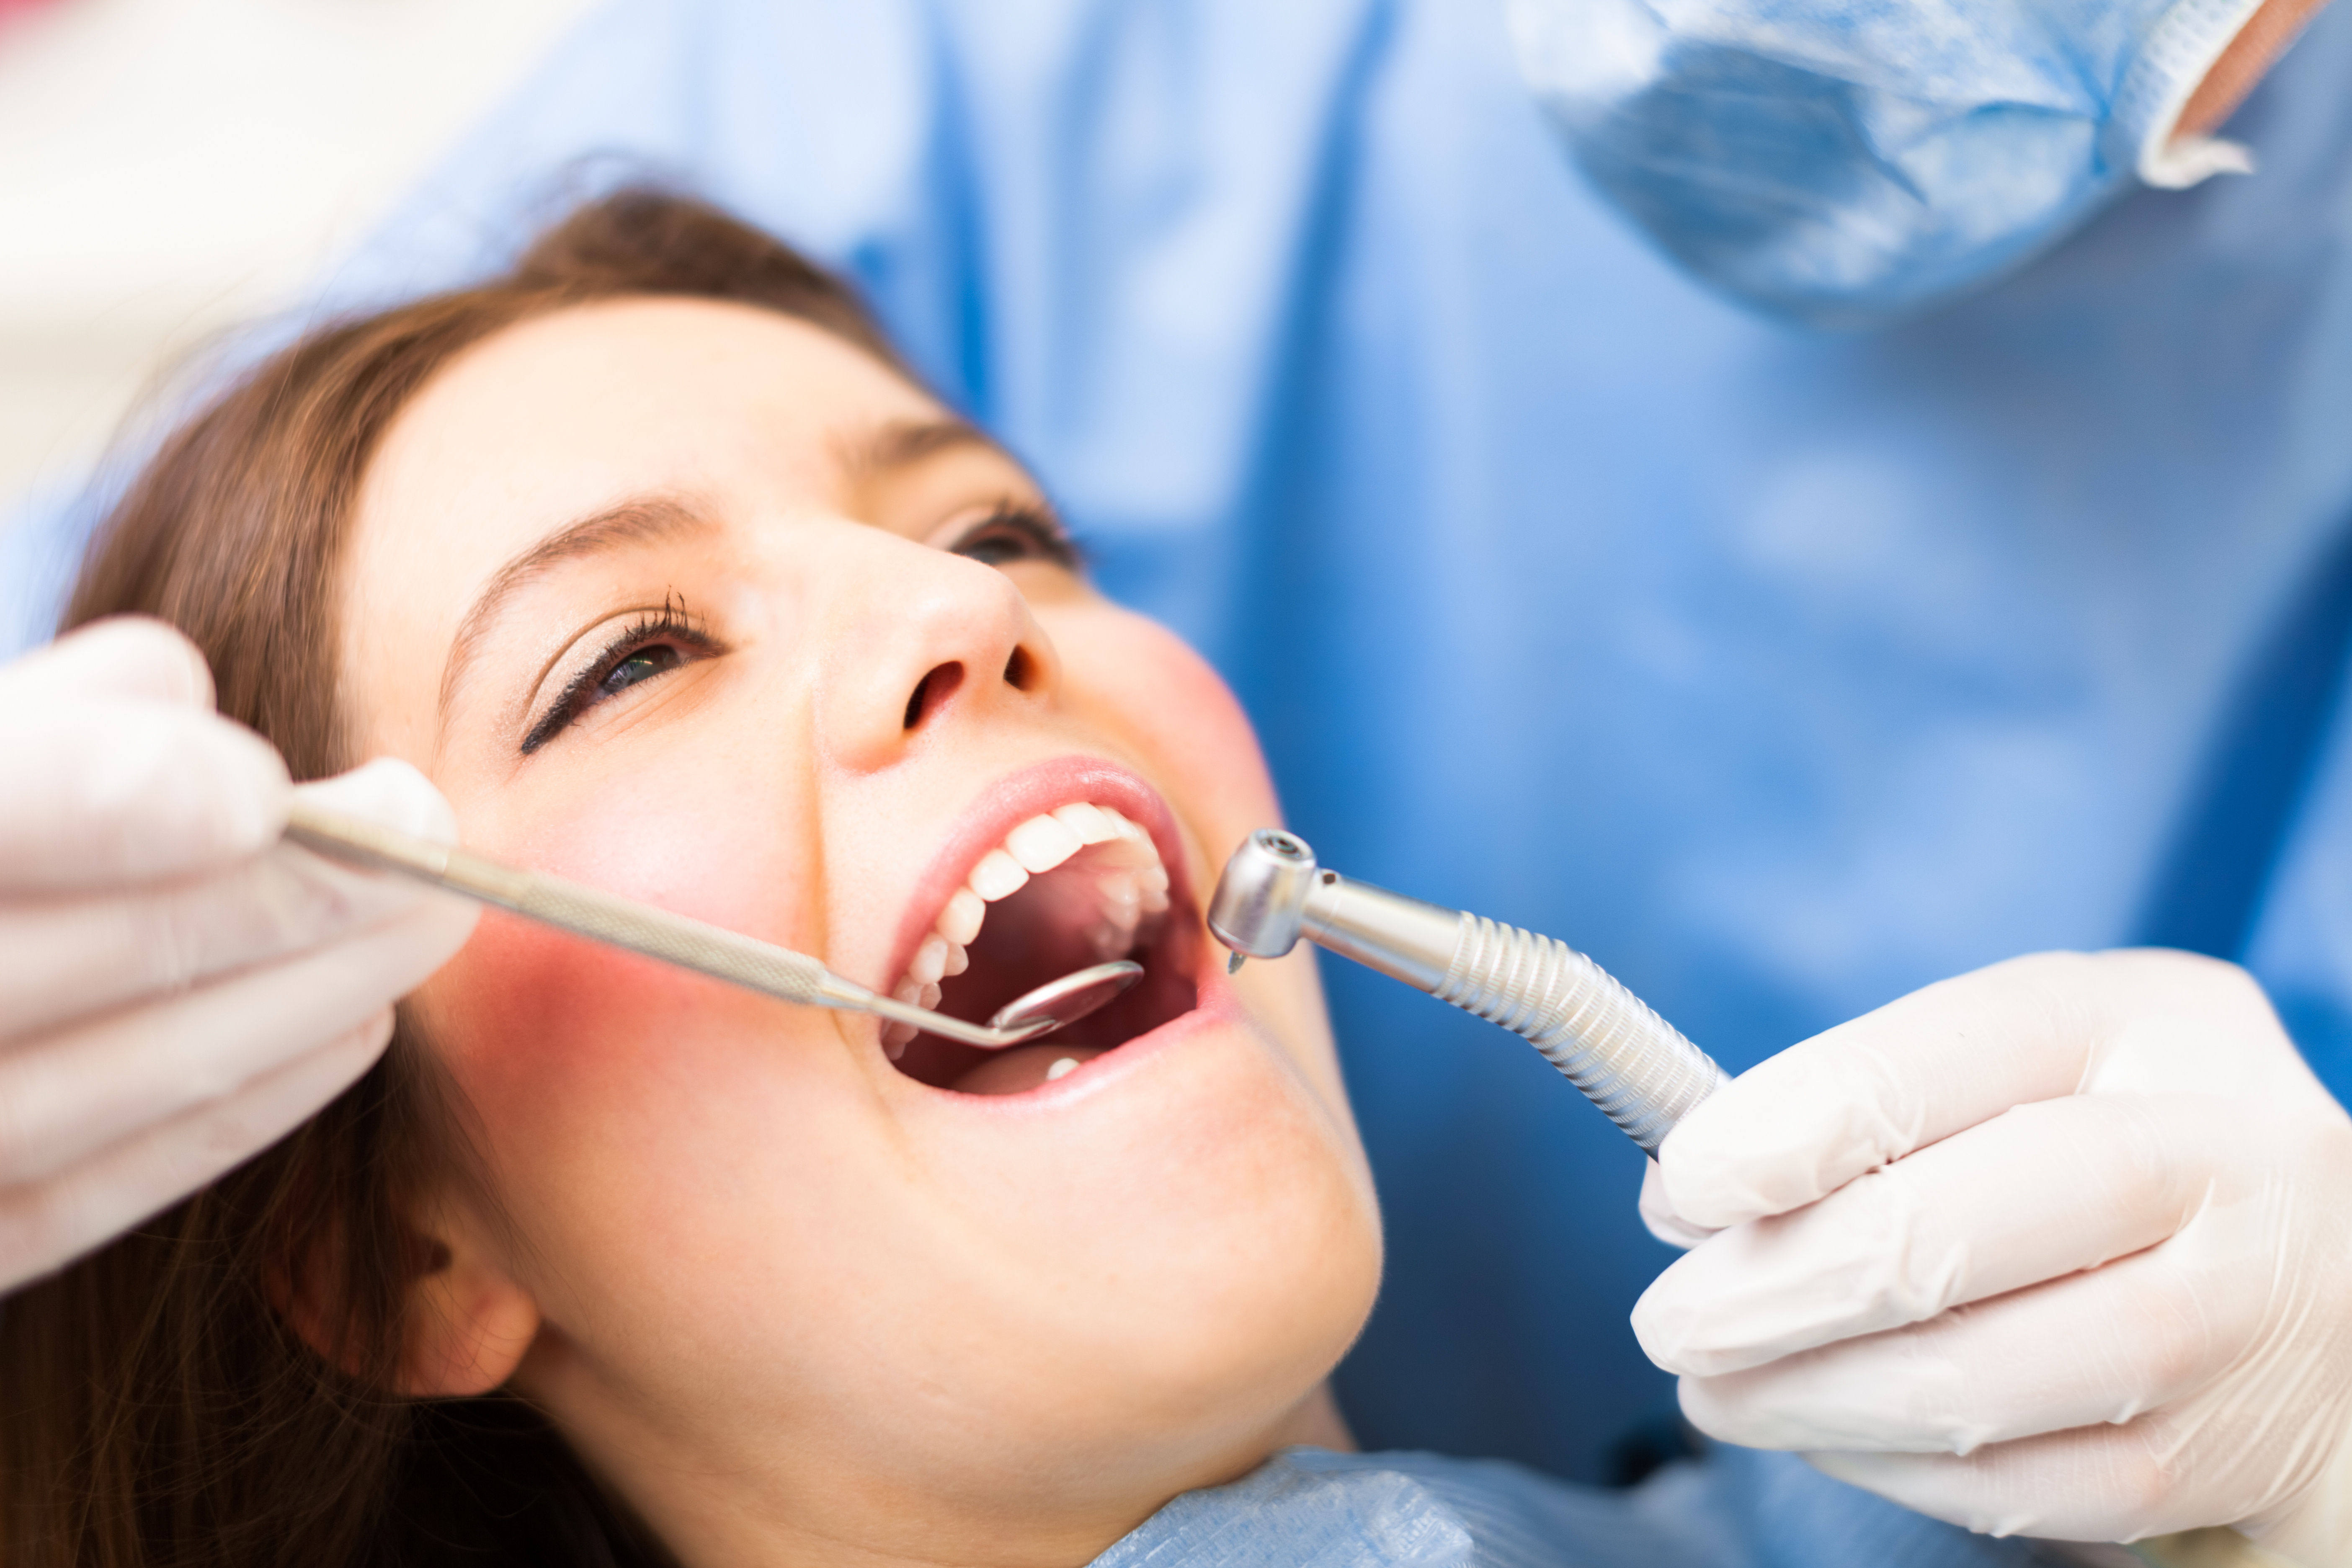 Полость рта для стоматолога. Терапия стоматология. Улыбка дантист. Зубы стоматология. Стоматолог женщина.